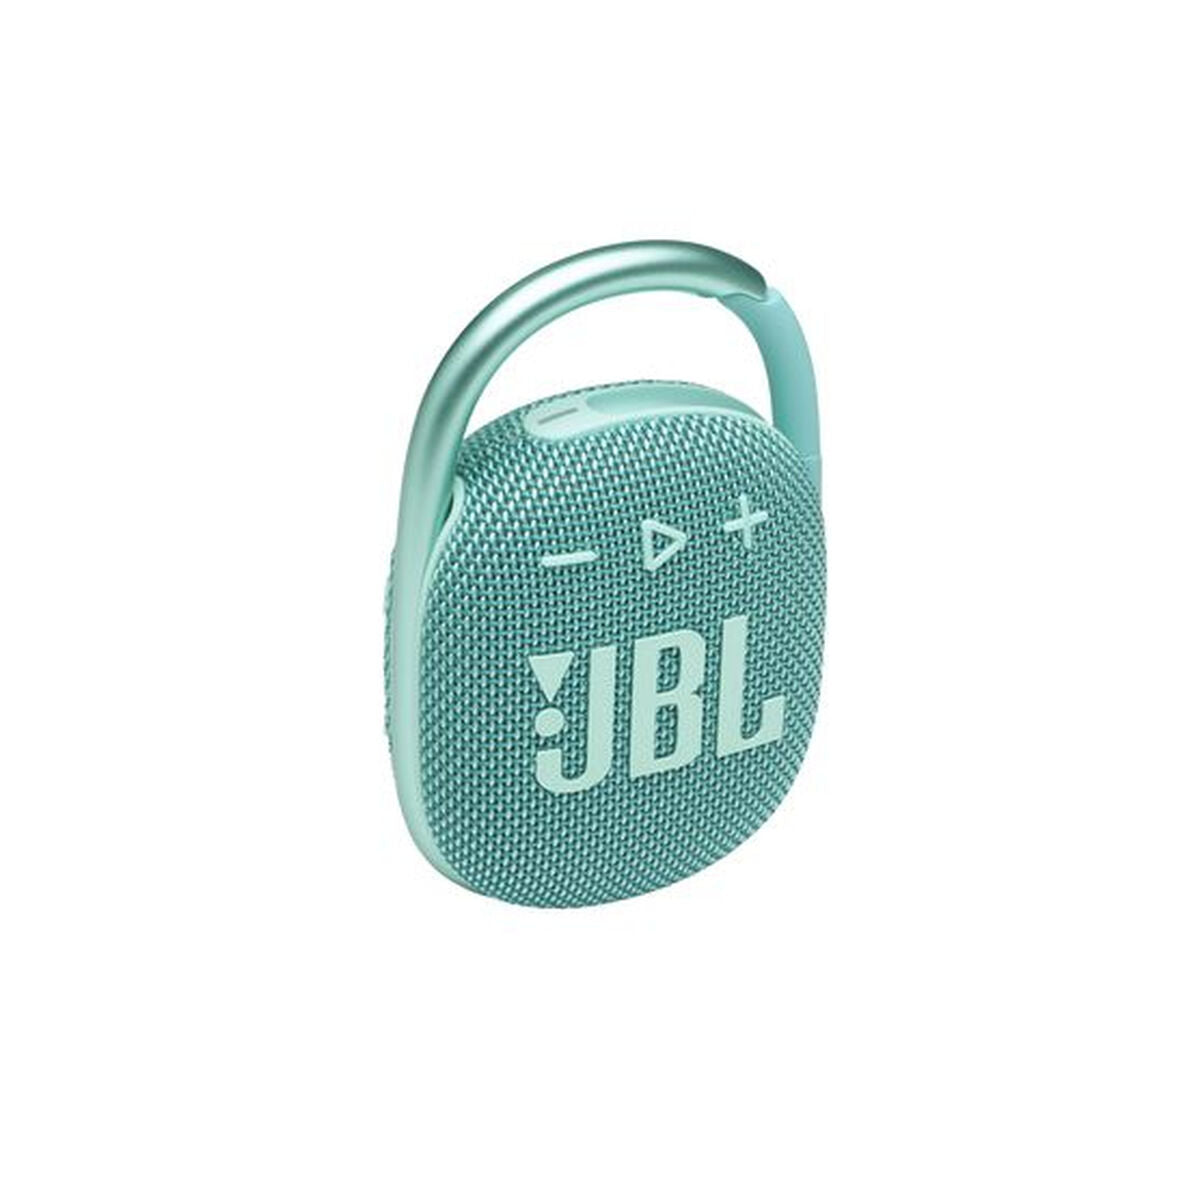 Kaufe Tragbare Bluetooth-Lautsprecher JBL Clip 4 türkis bei AWK Flagship um € 82.00